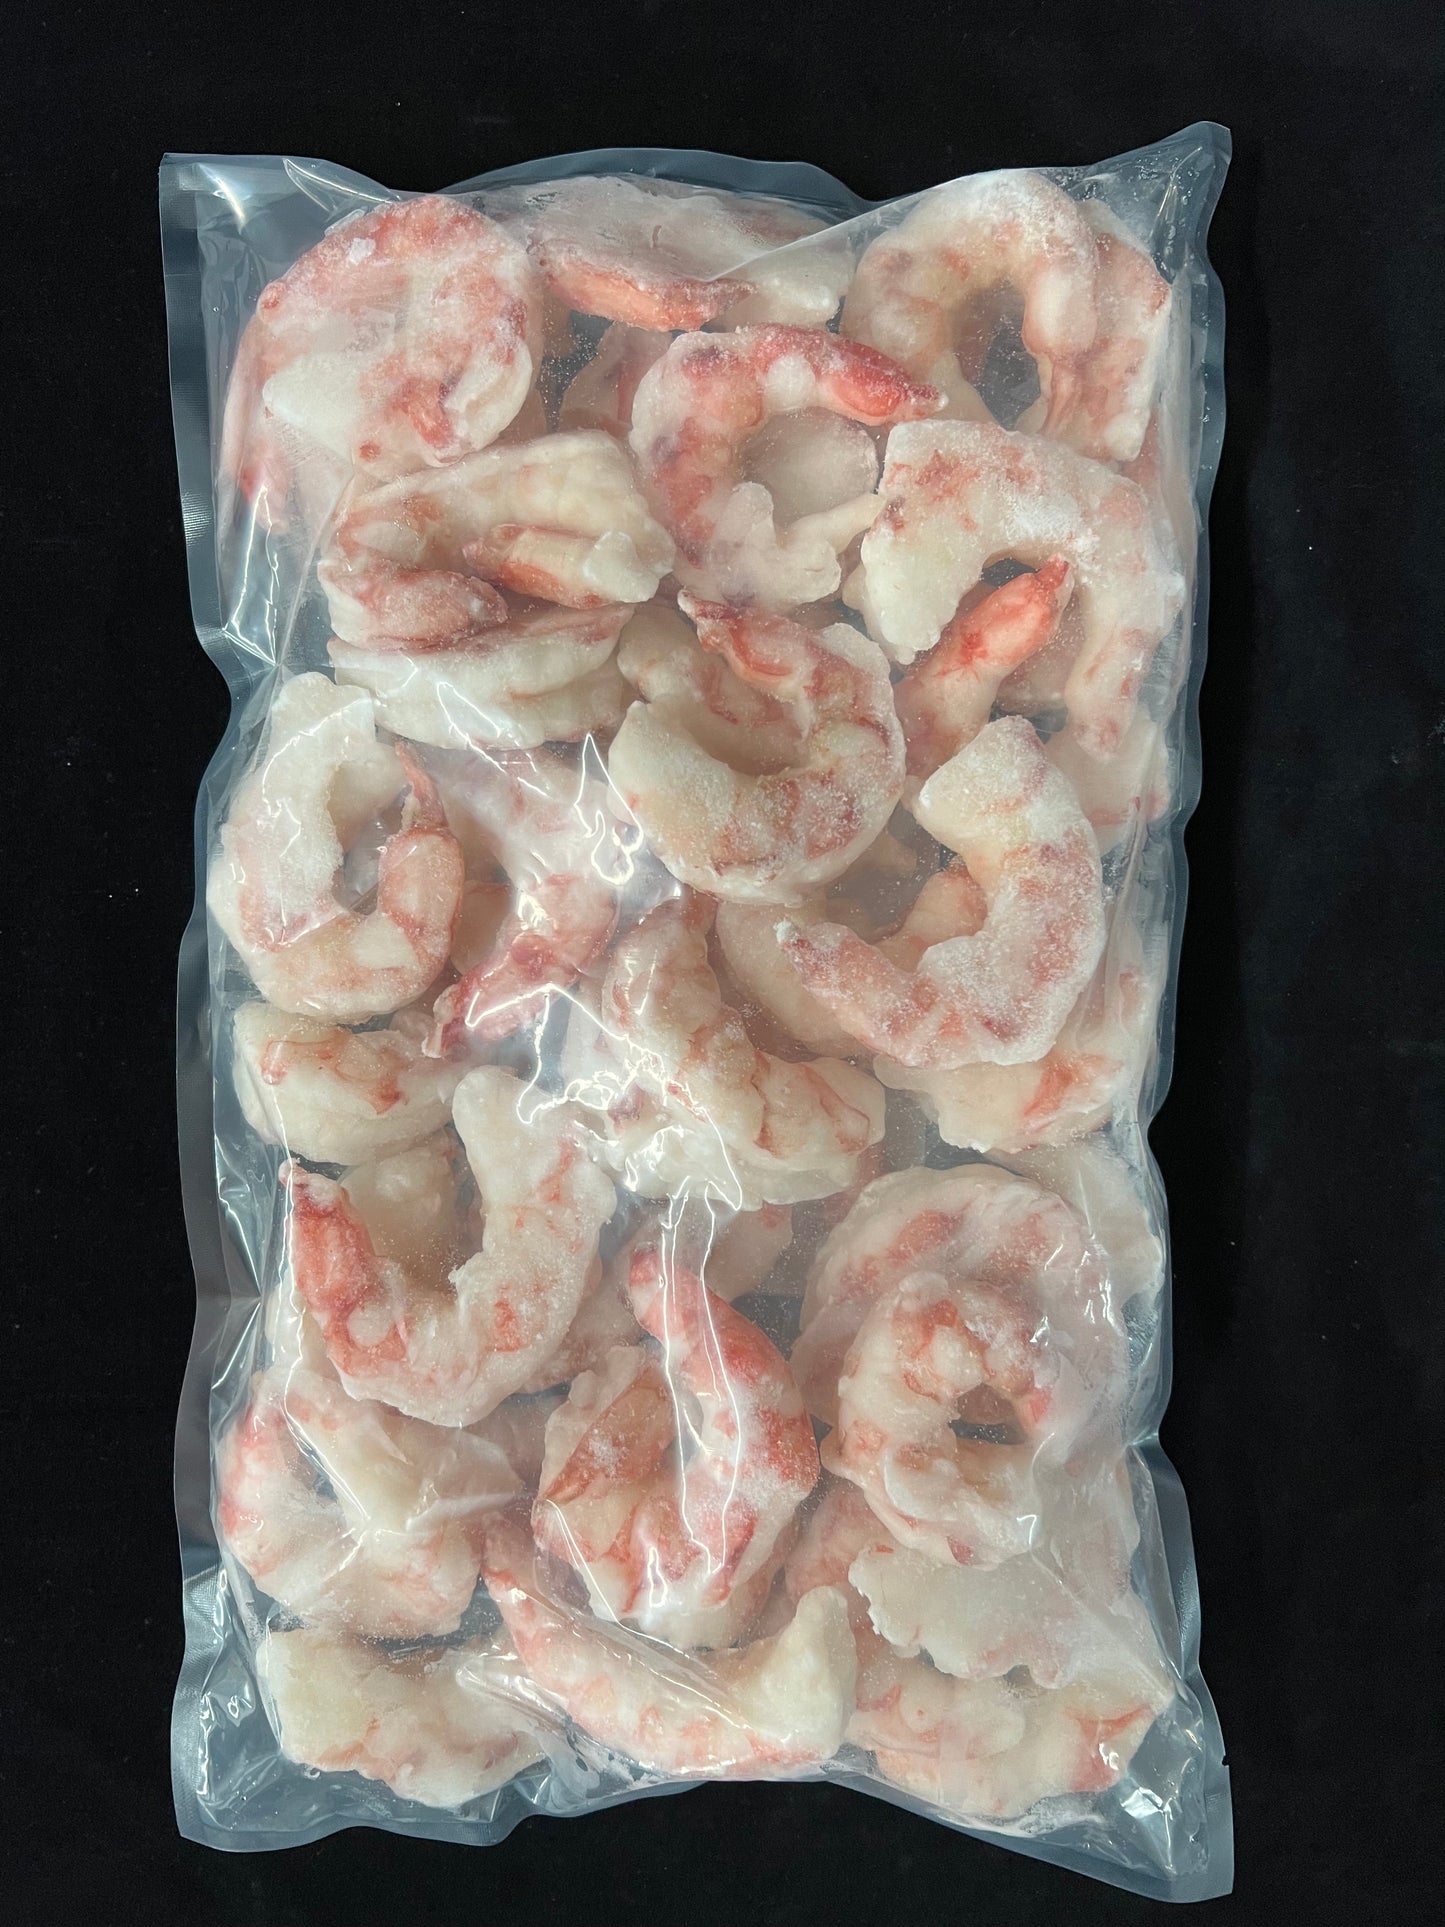 Crevettes rose d'Argentine (16/20)/ Argentina Pink Shrimps (16/20) - 1362 g